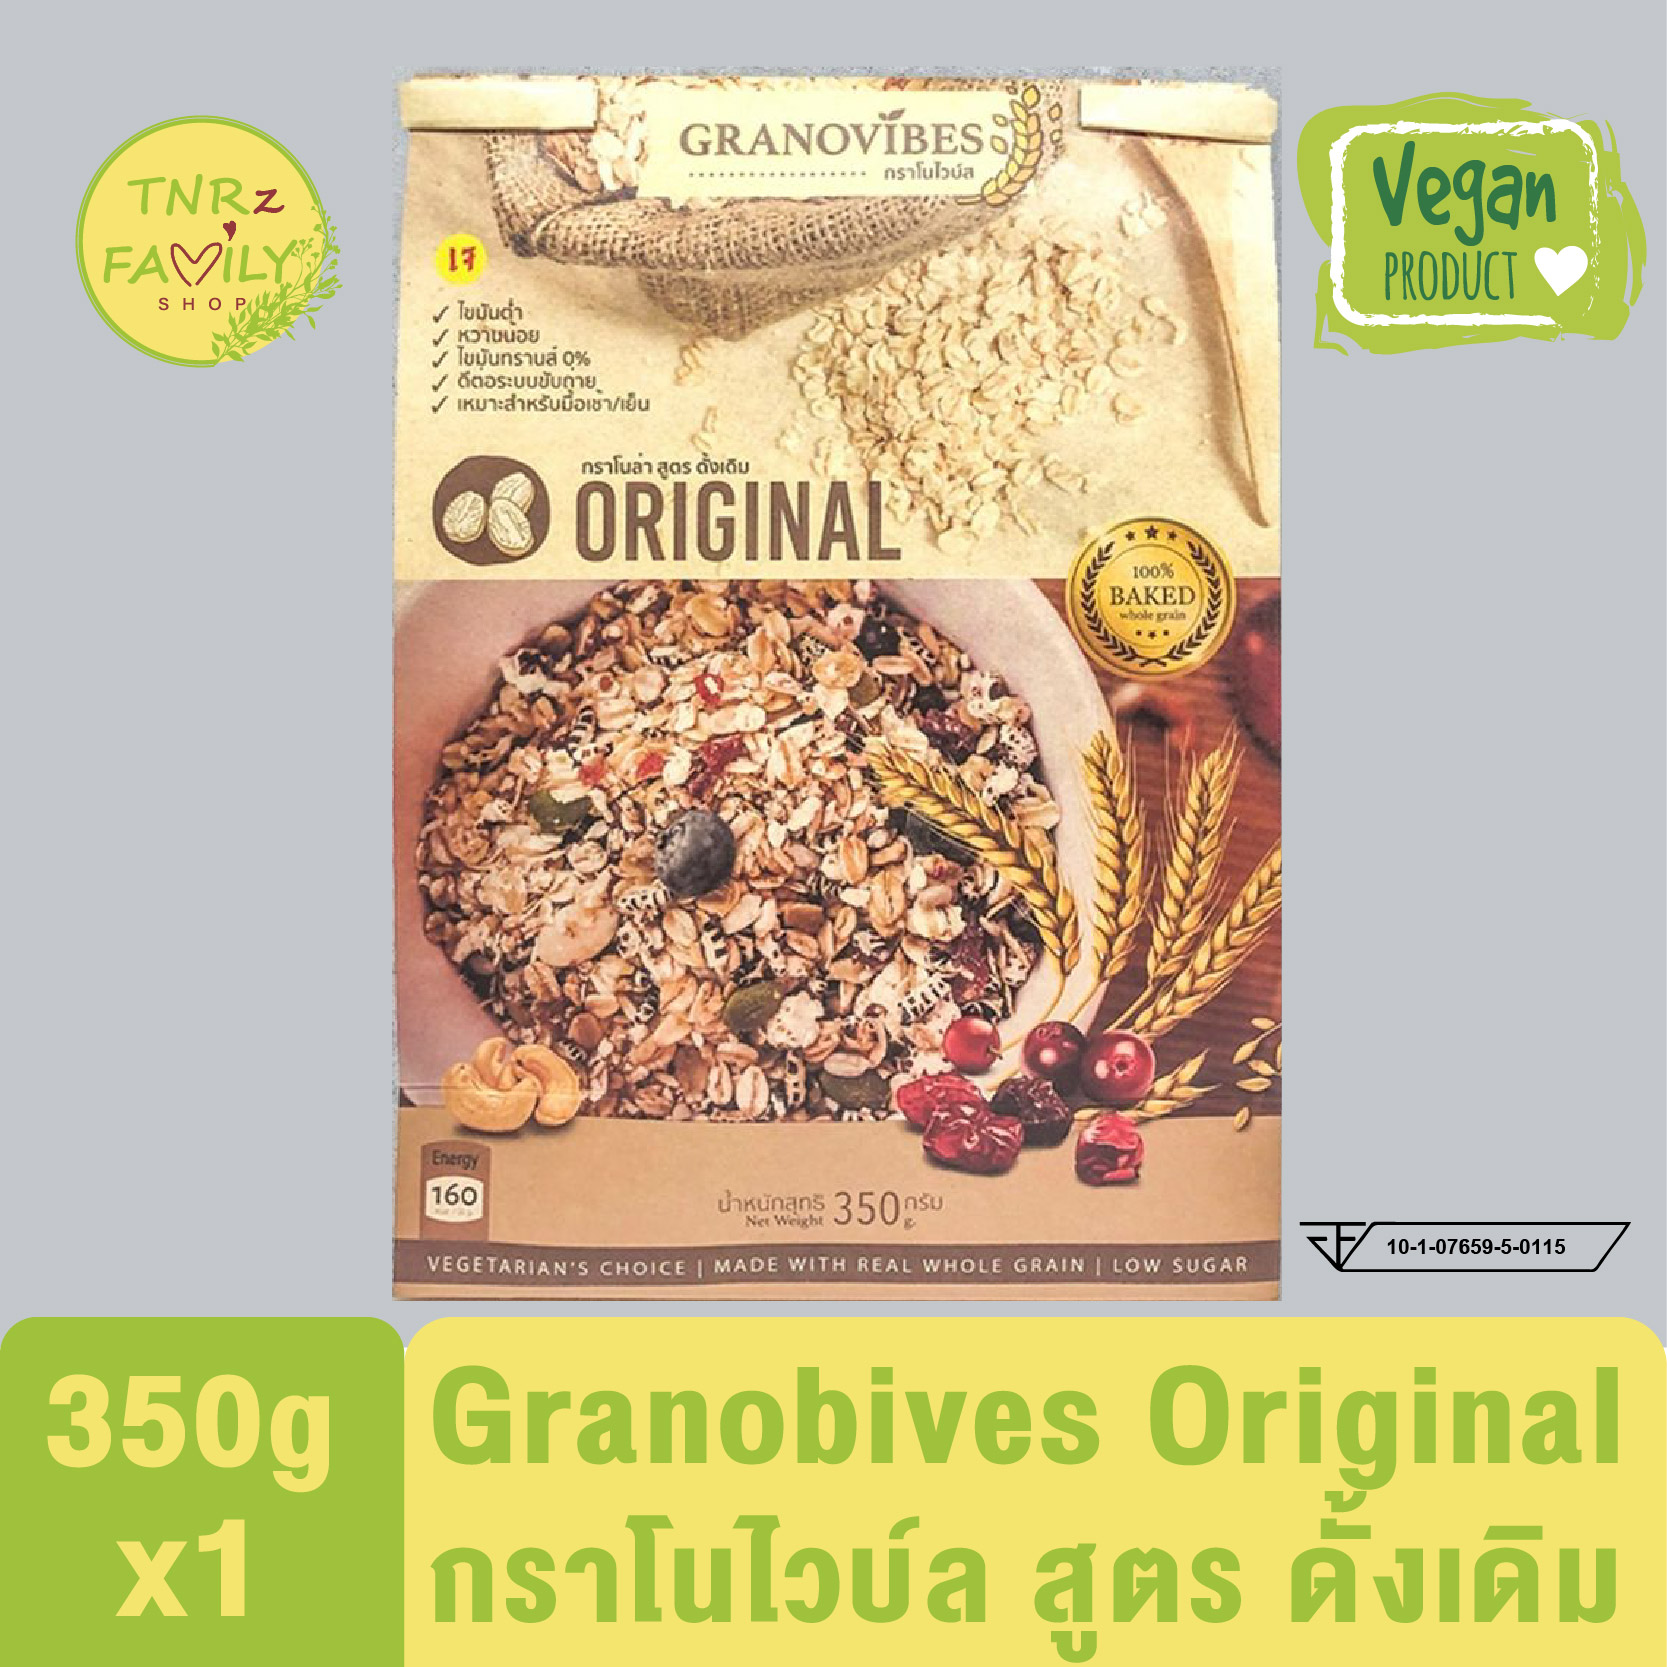 [350g]Granovibes Original กราโนไวบ์ส กราโนล่า สูตรดั้งเดิม โซเดียมต่ำ ไขมันต่ำ ทางเลือกเพื่อสุขภาพ ขนาด 350 กรัม /ถุง